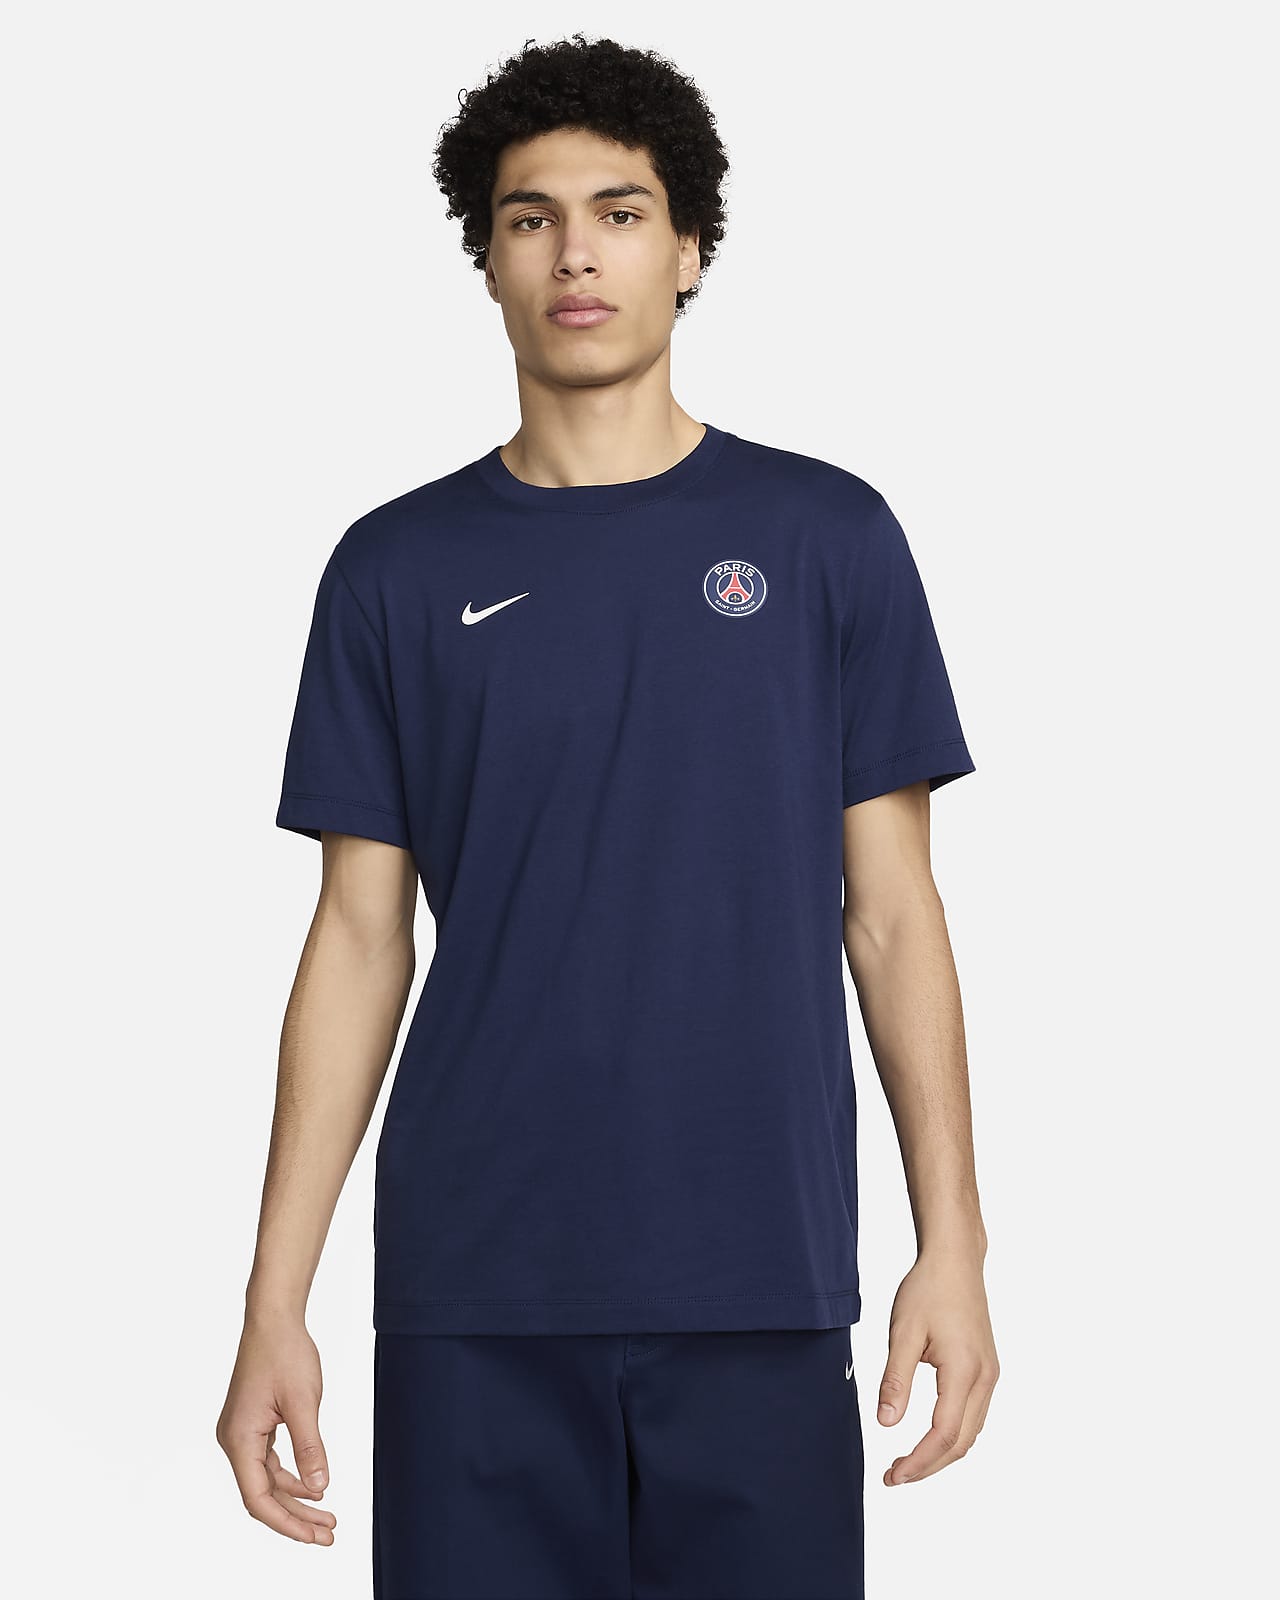 Paris Saint-Germain Essential Men's Nike Football T-Shirt